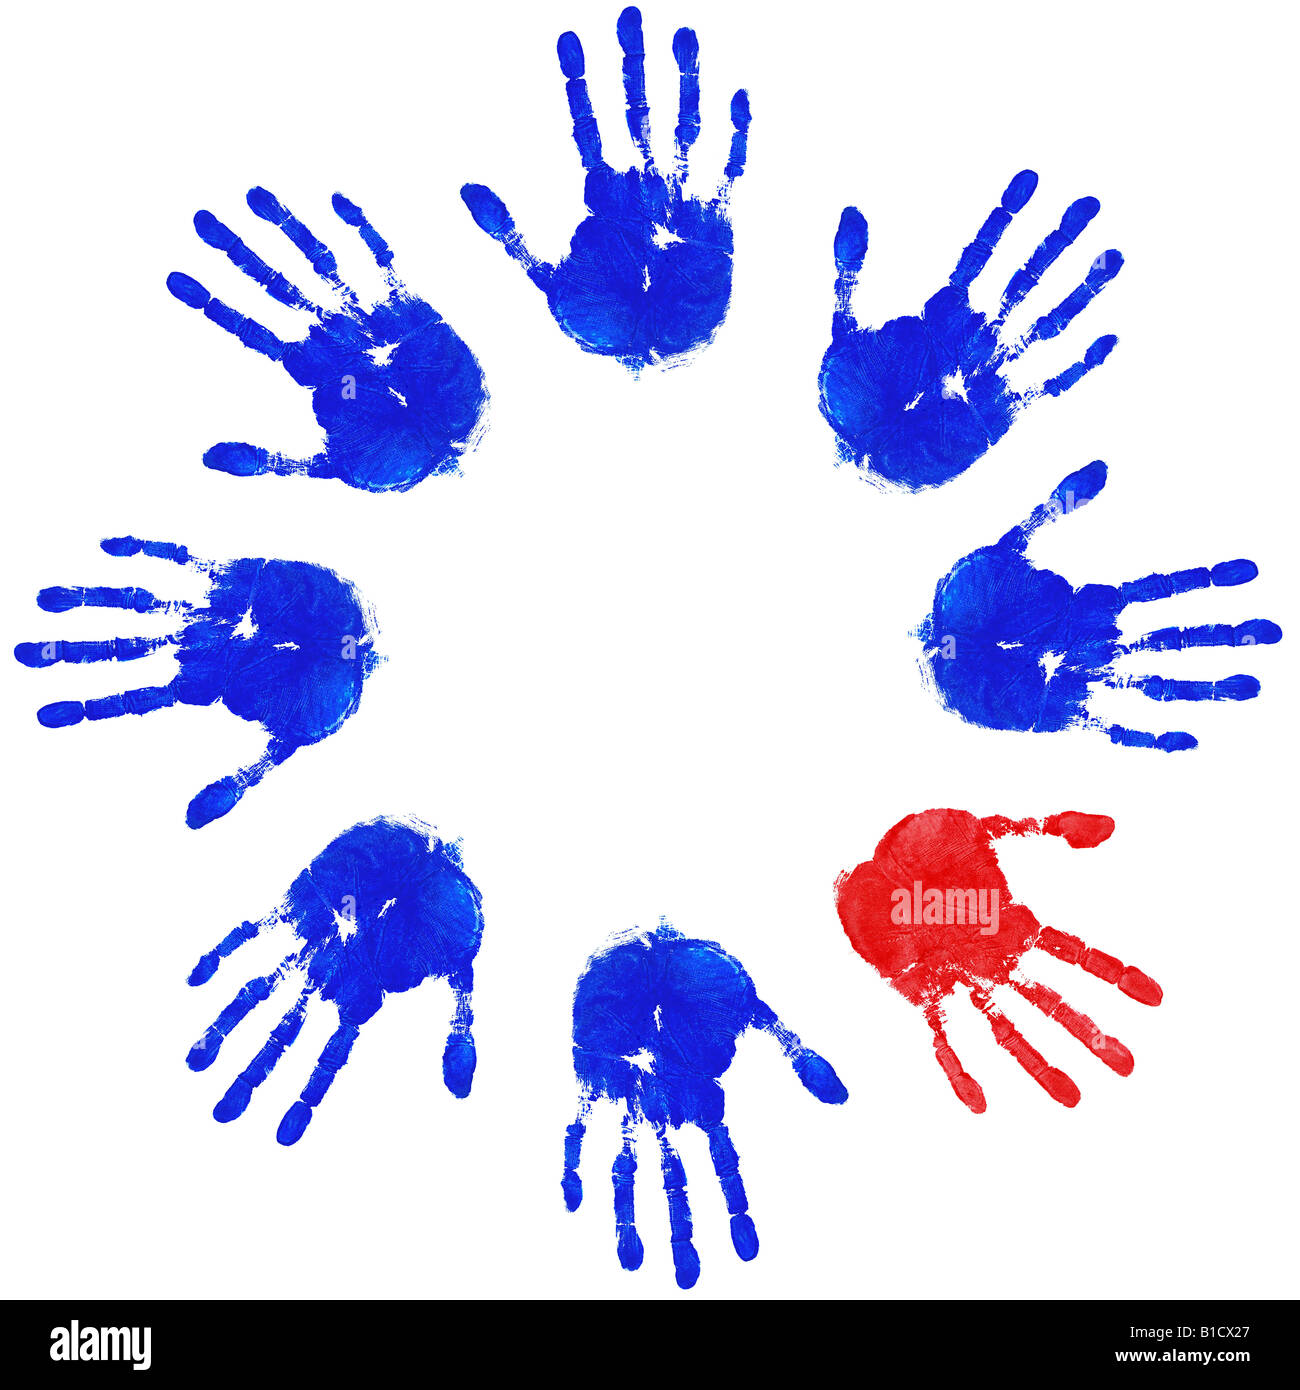 Des images empreintes d'un étrange bleu rouge une équipe de concepts de l'égalité et de la diversité Banque D'Images